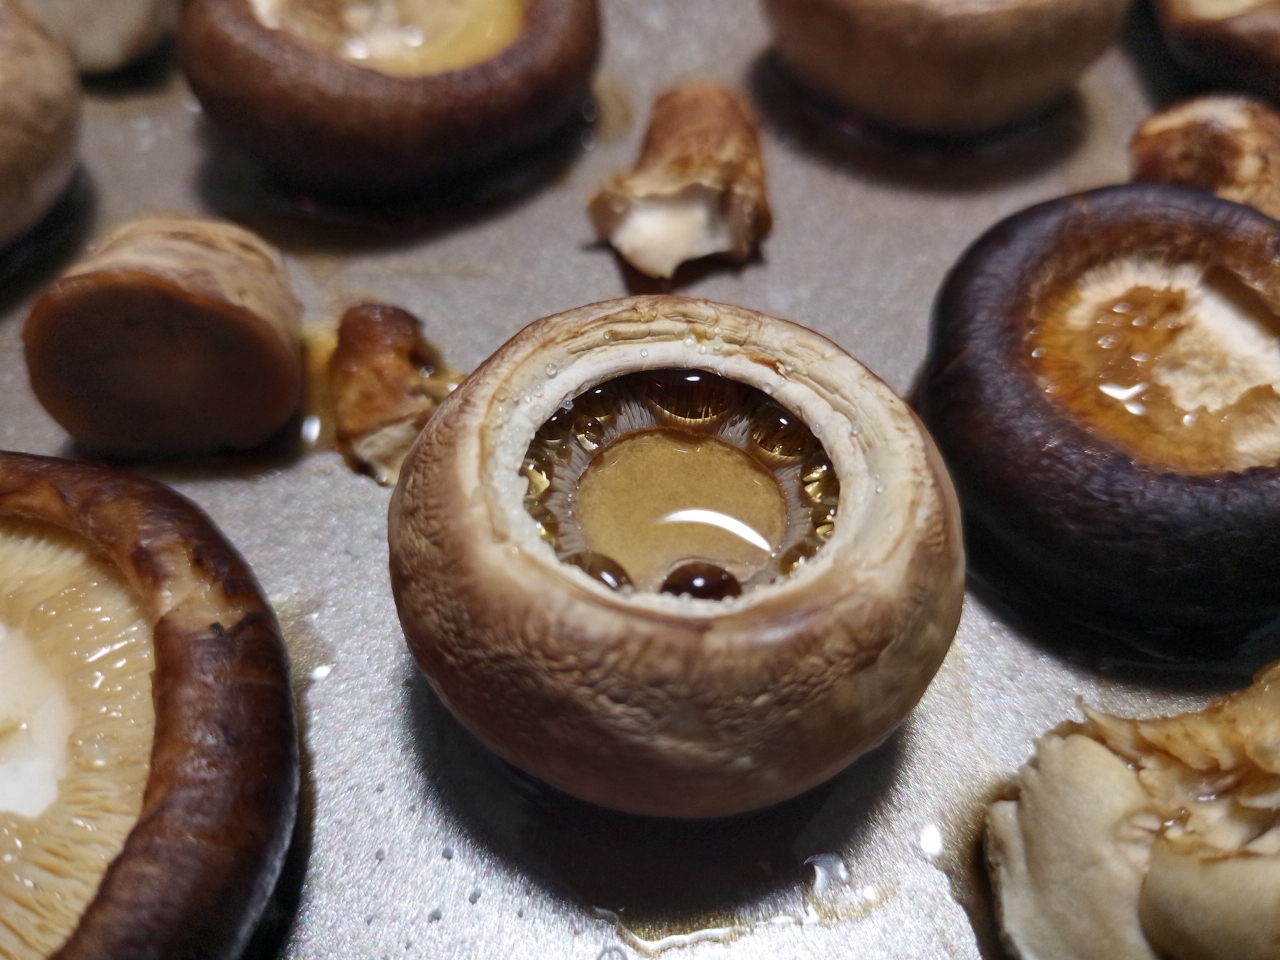 烤蘑菇✨无油健康又鲜脆の烤箱菜